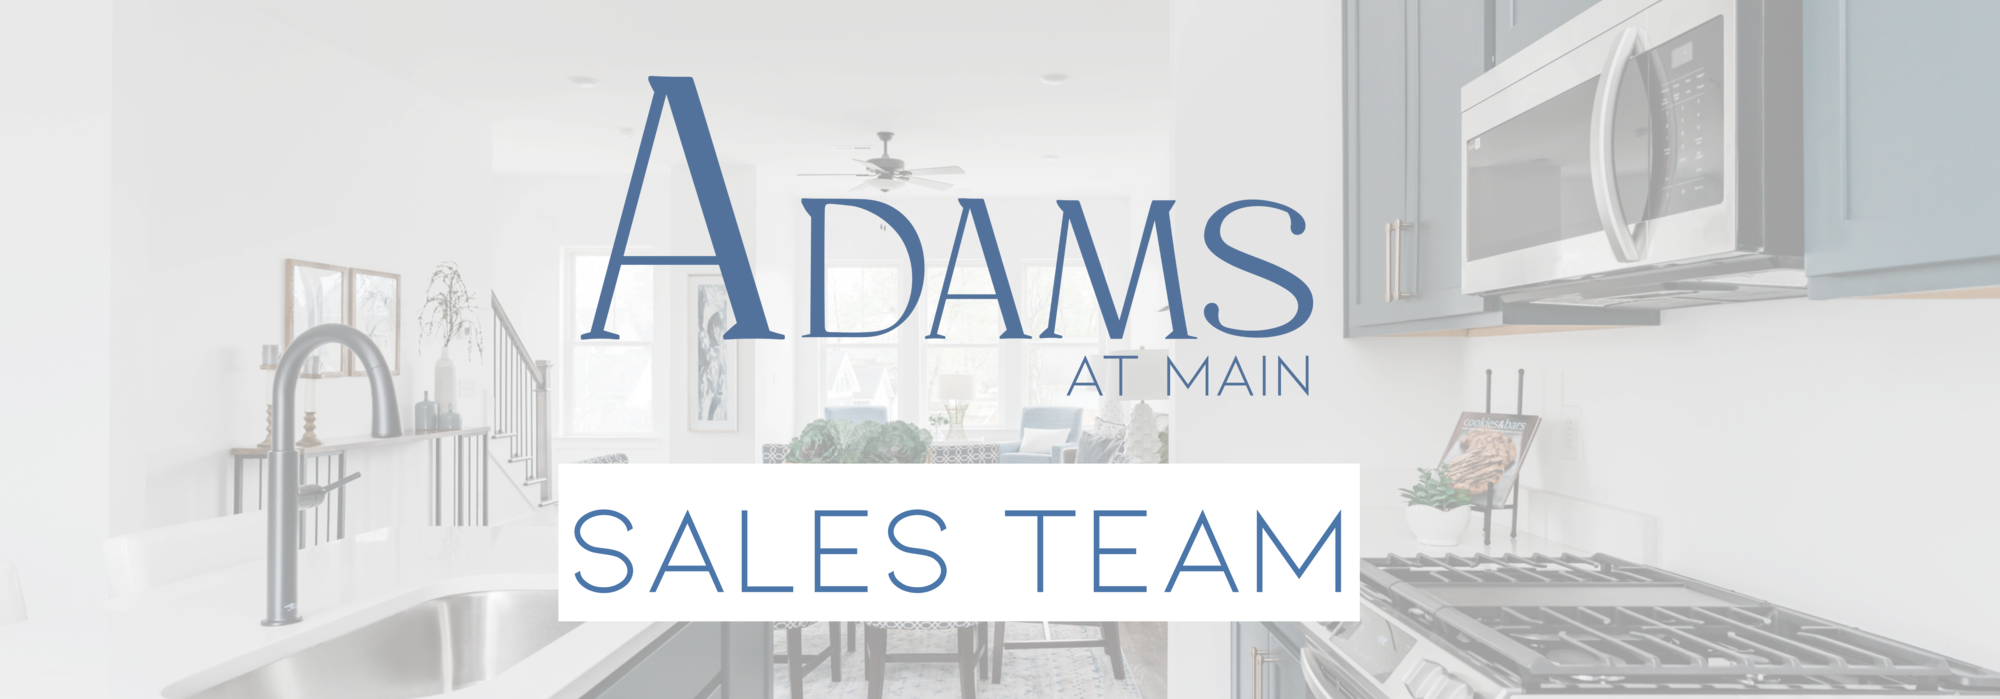 meet the team adams street